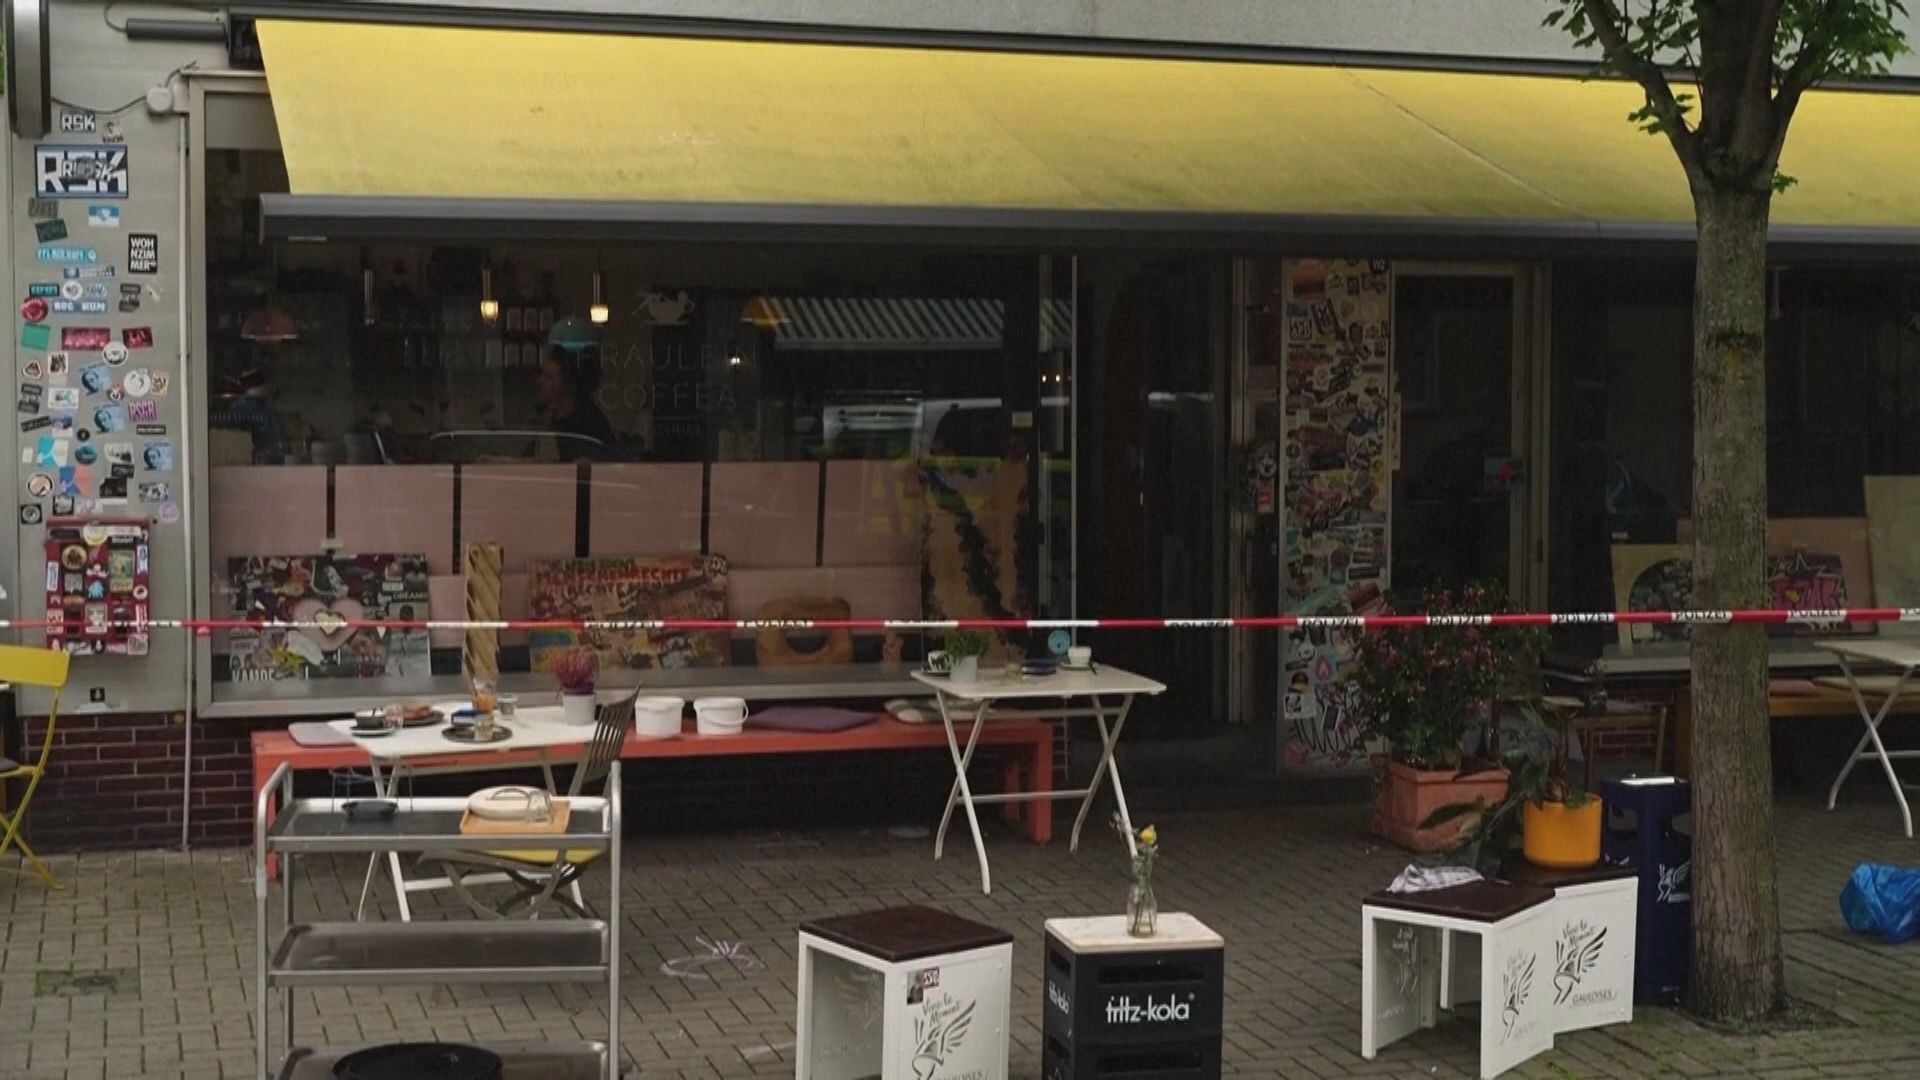 德國咖啡店遭潑鏹水14人傷 男疑犯被捕